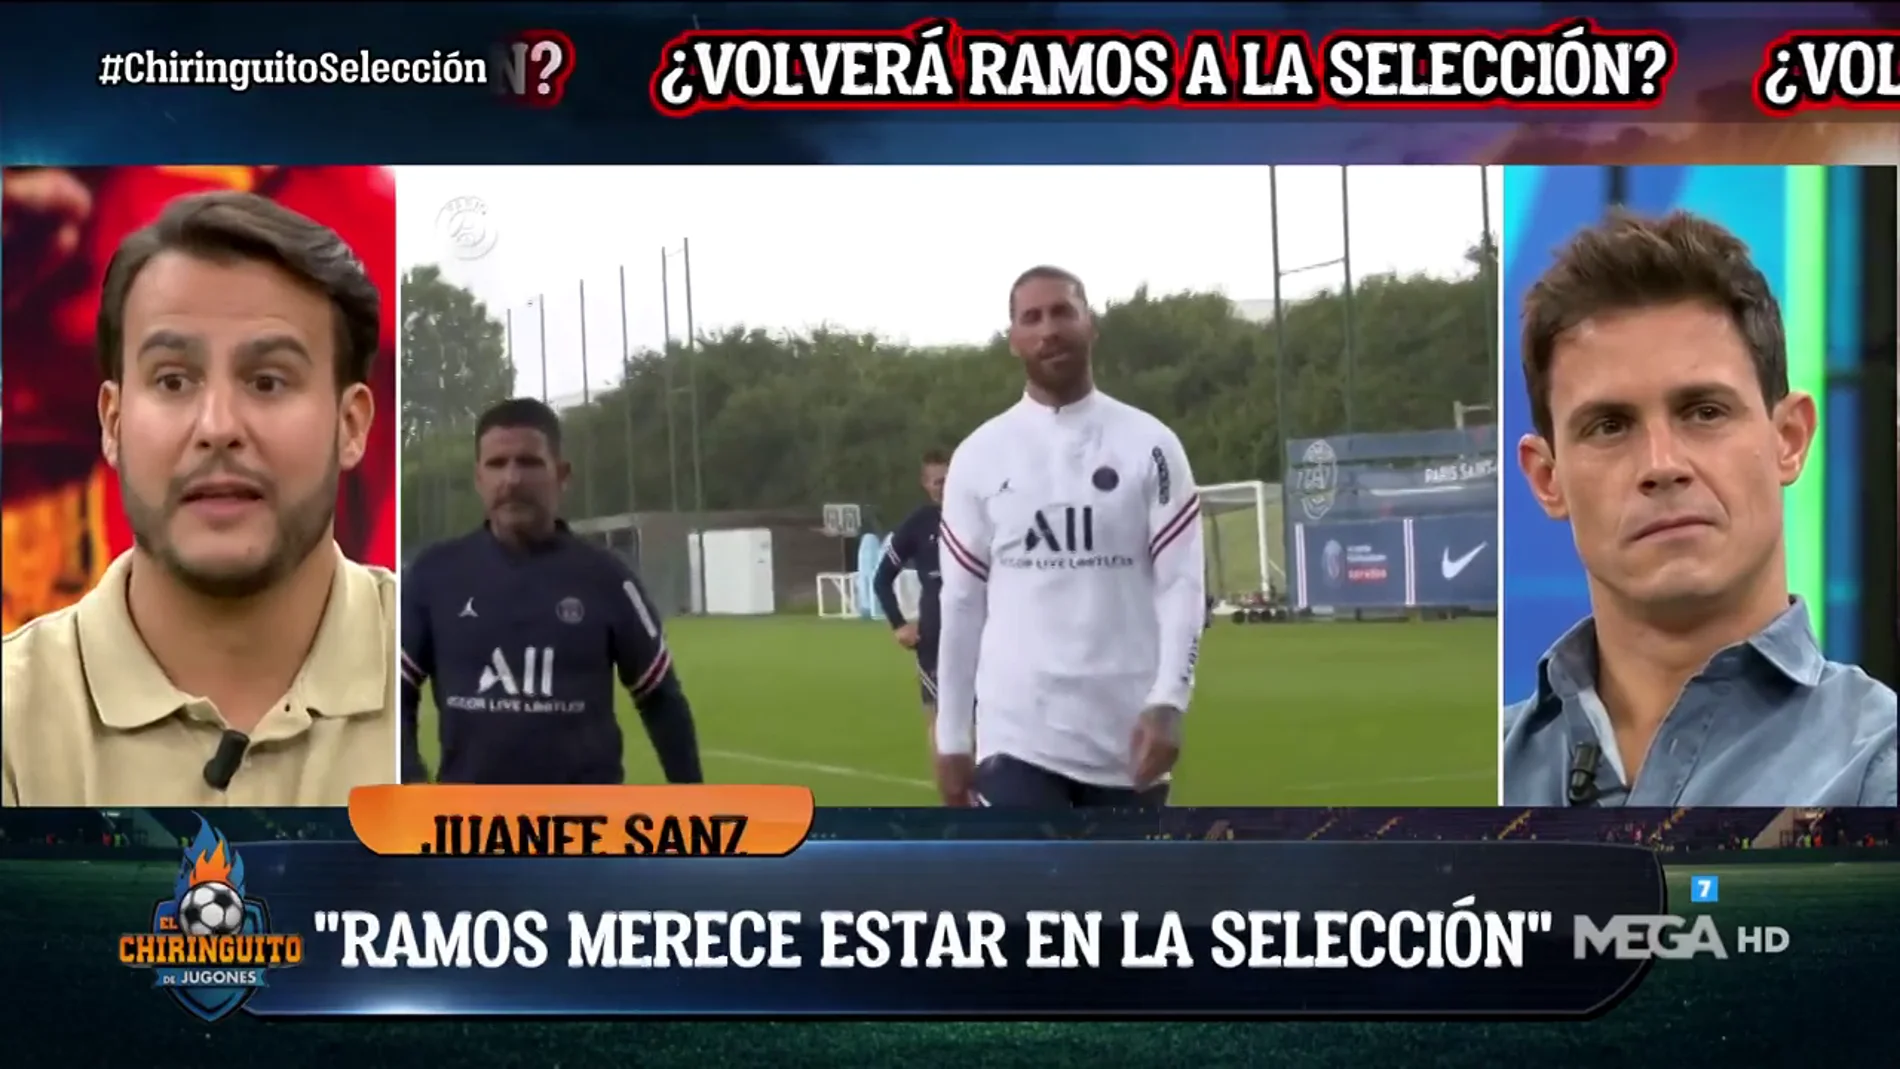 "Ramos merece volver a la selección"